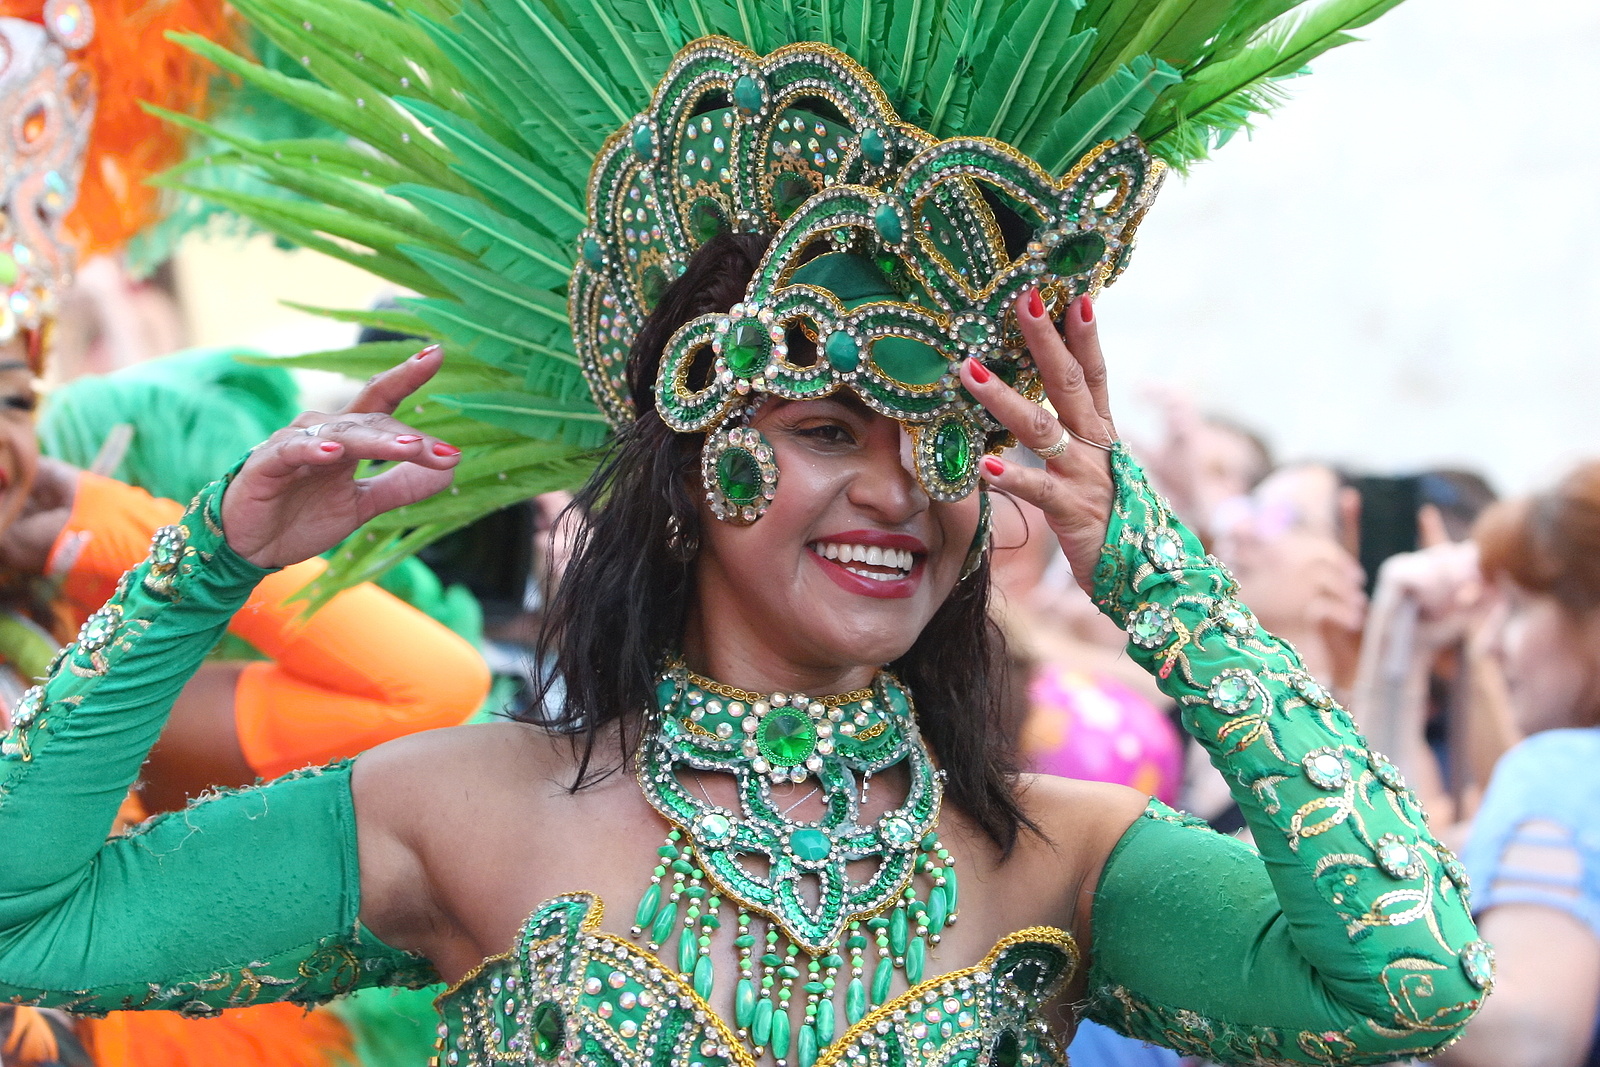 Tanec, bubny, kostýmy: Brazílie zavítala do Brna. Festival začal karnevalem  - Brněnský deník